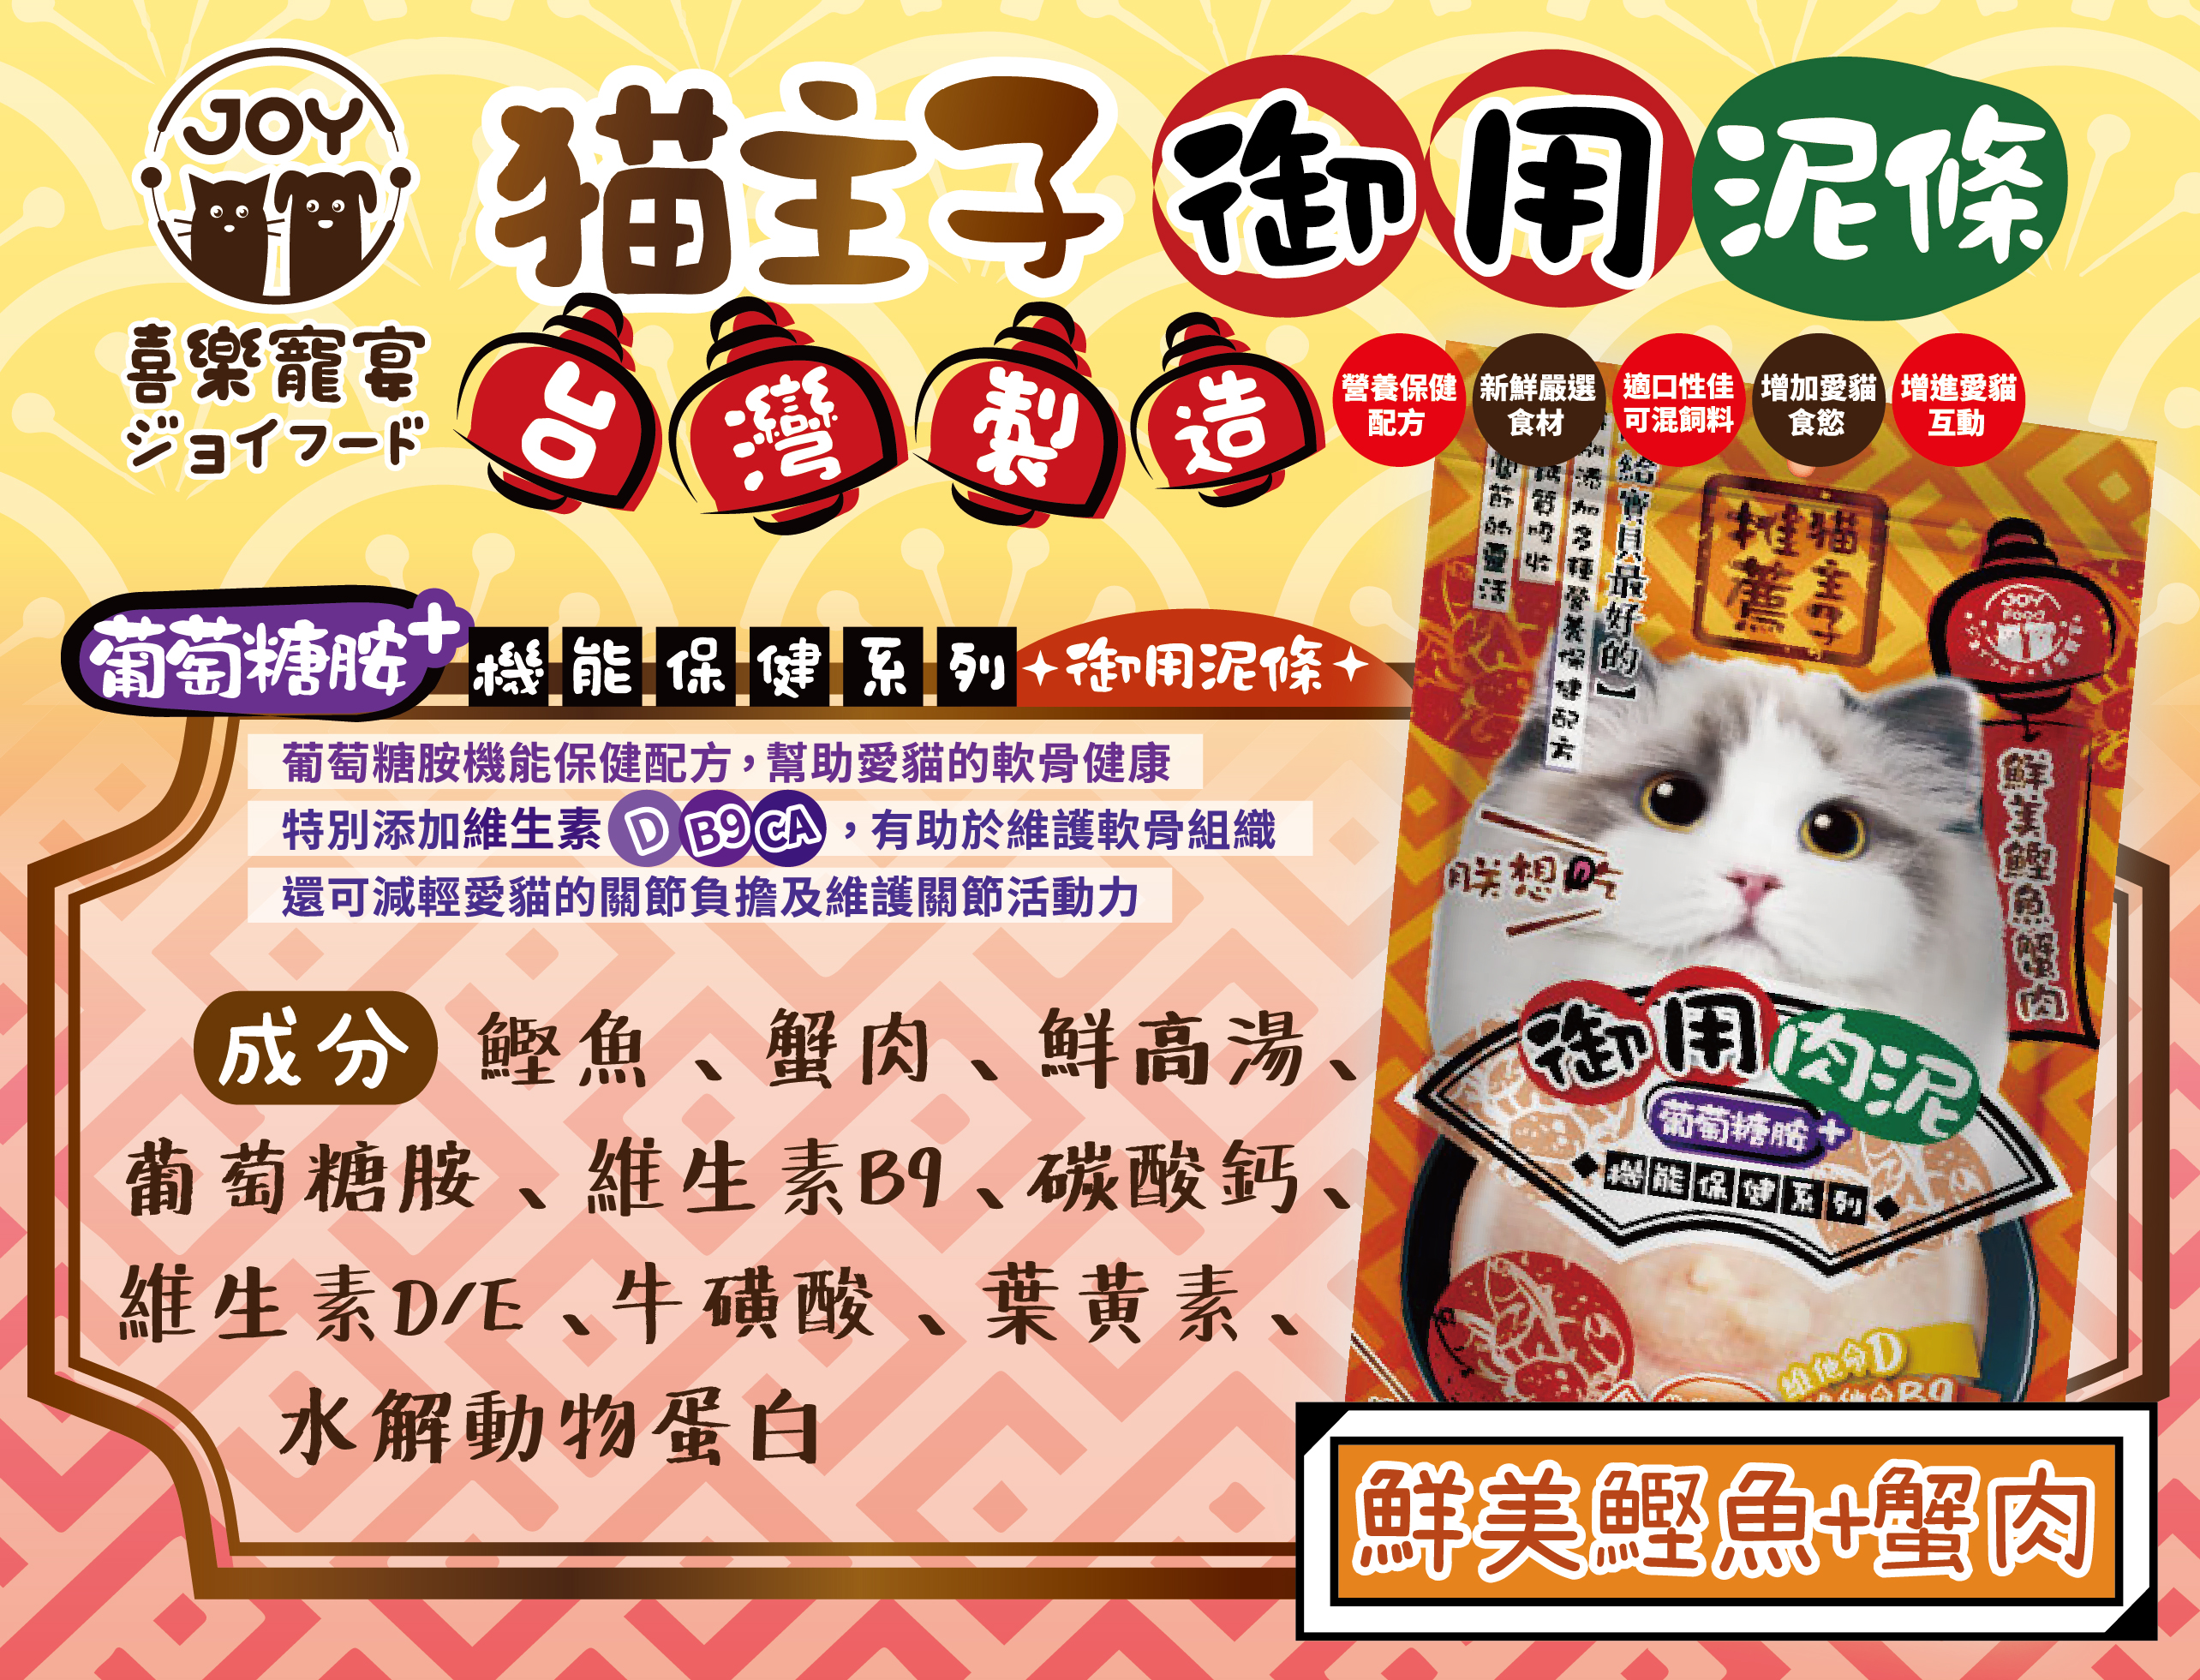 【Joy Food 喜樂寵宴】貓主子御用保健機能泥條16gx4入(貓主子推薦/台